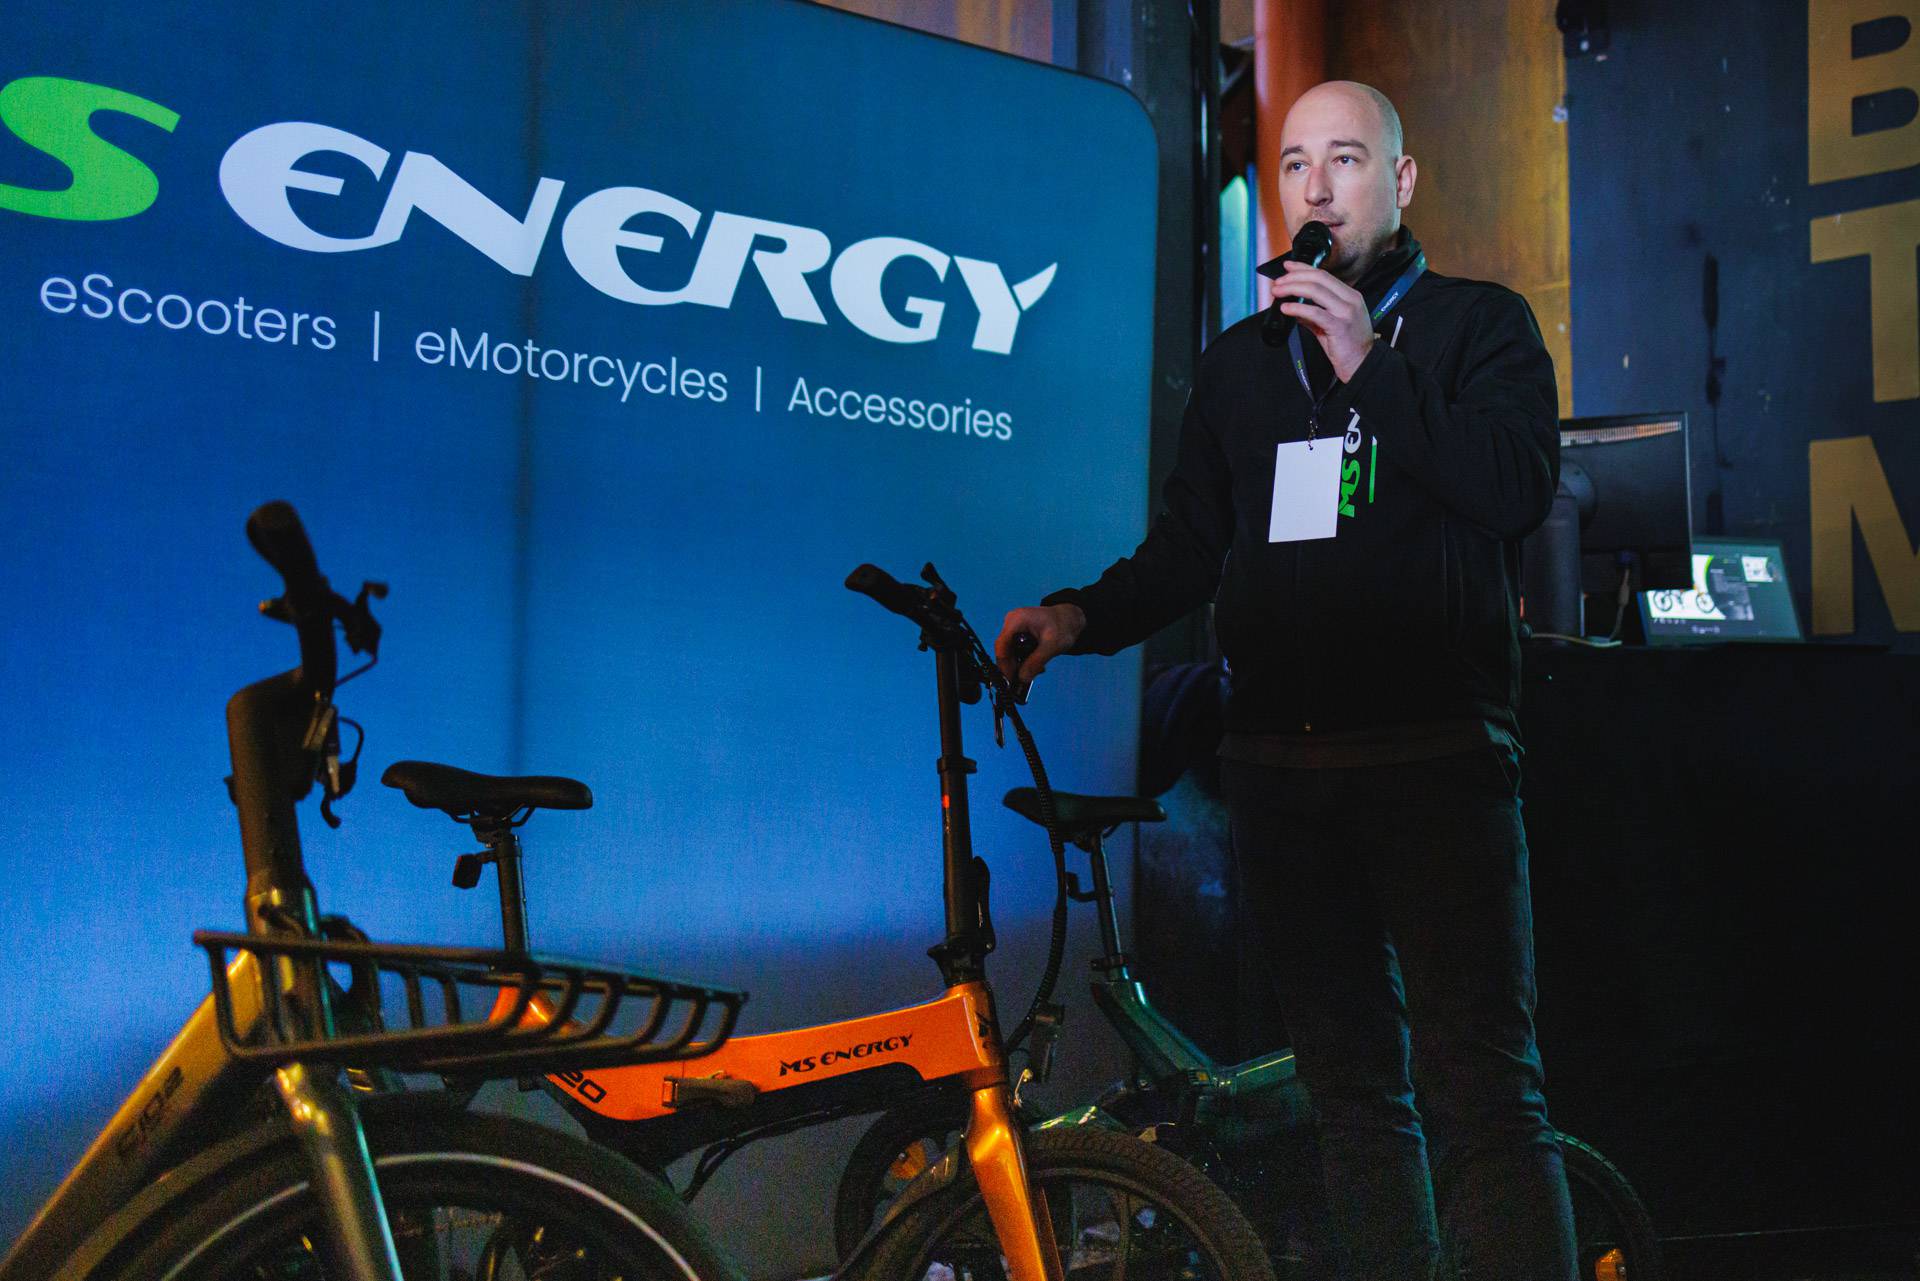 MS Energy predstavio niz novih električnih bicikala i romobila. Novi materijali i još bolji doseg